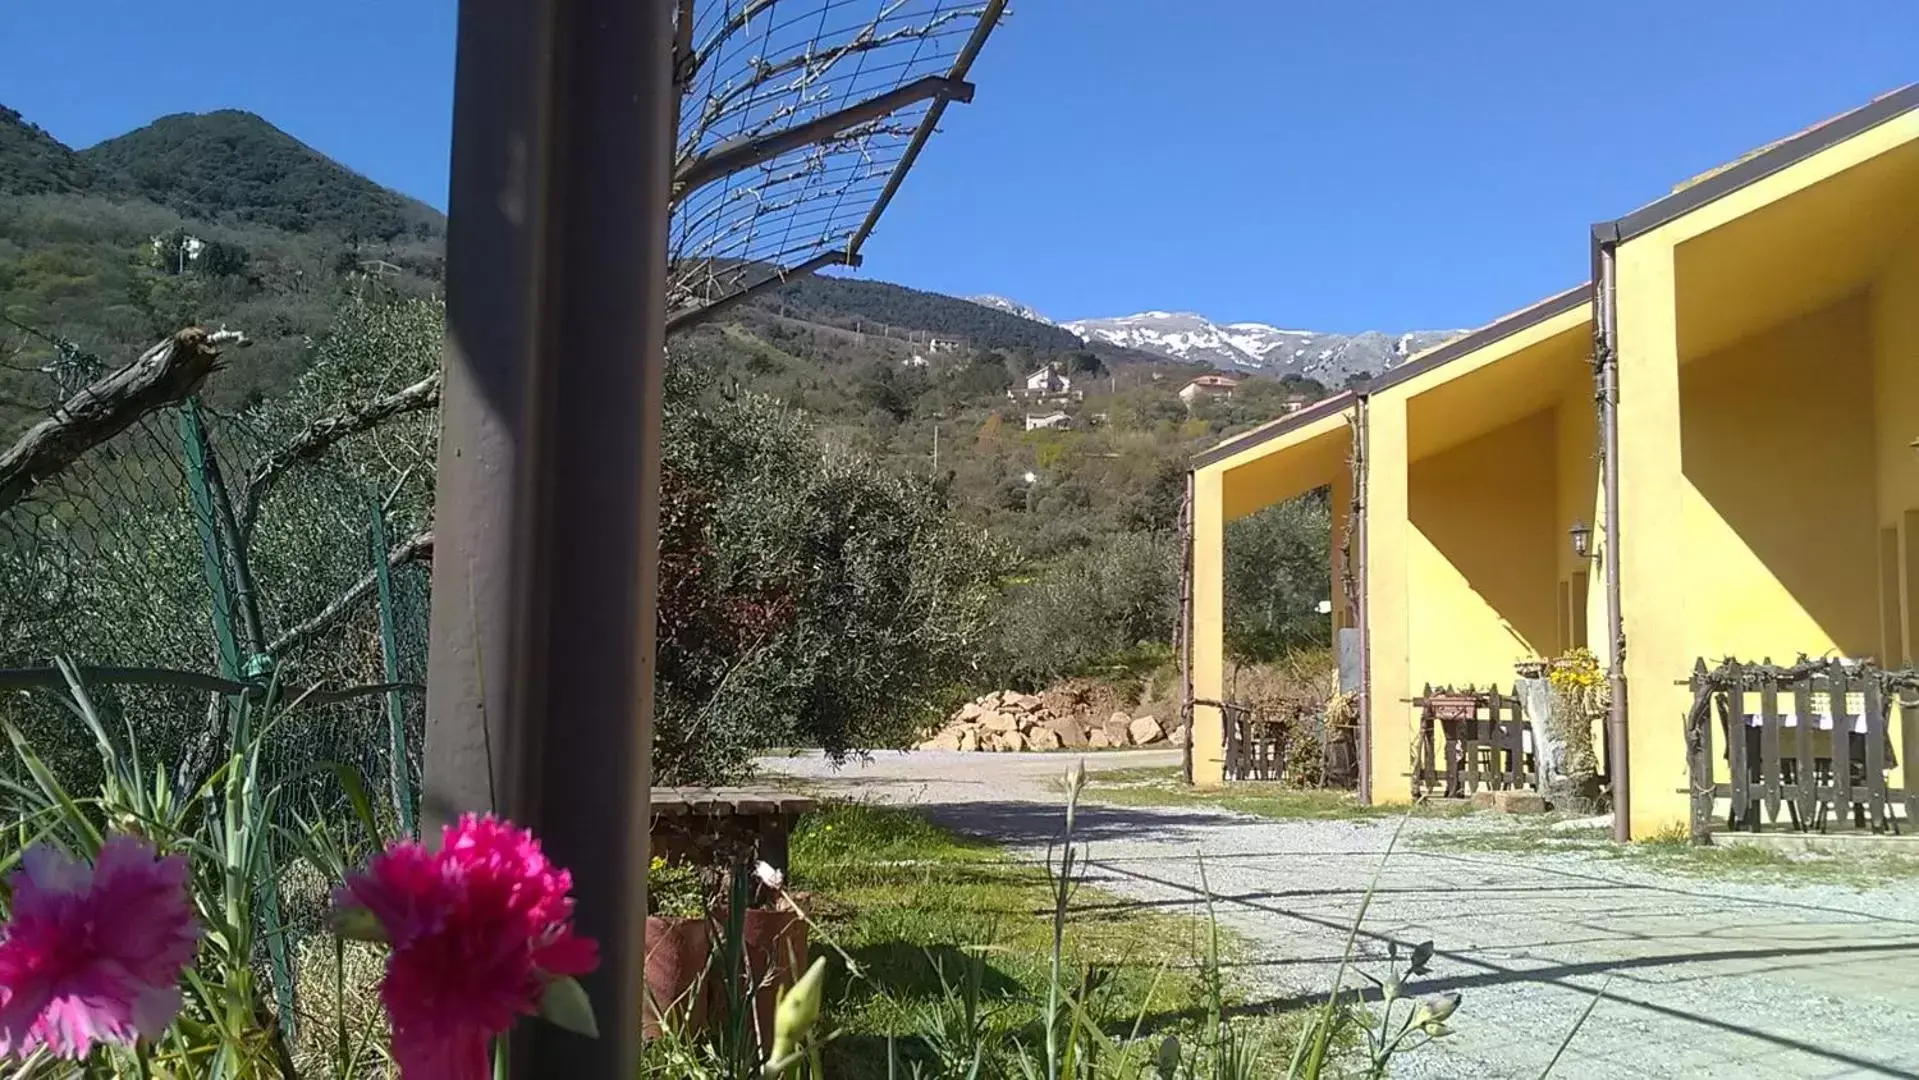 Property building, Mountain View in Villaggio dei Balocchi